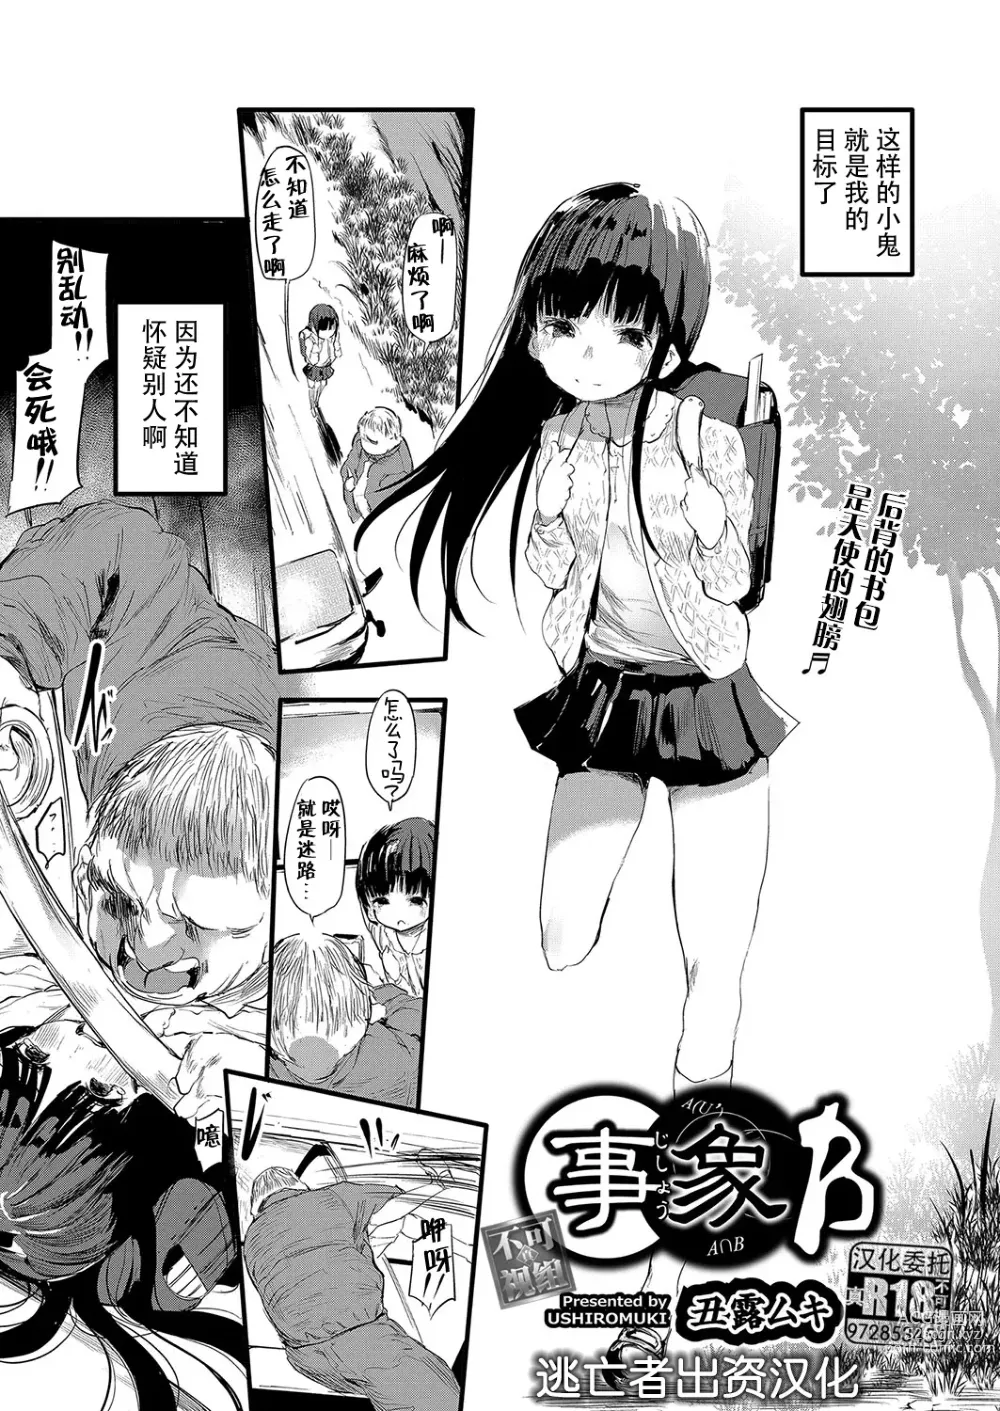 Page 1 of manga Jishou B